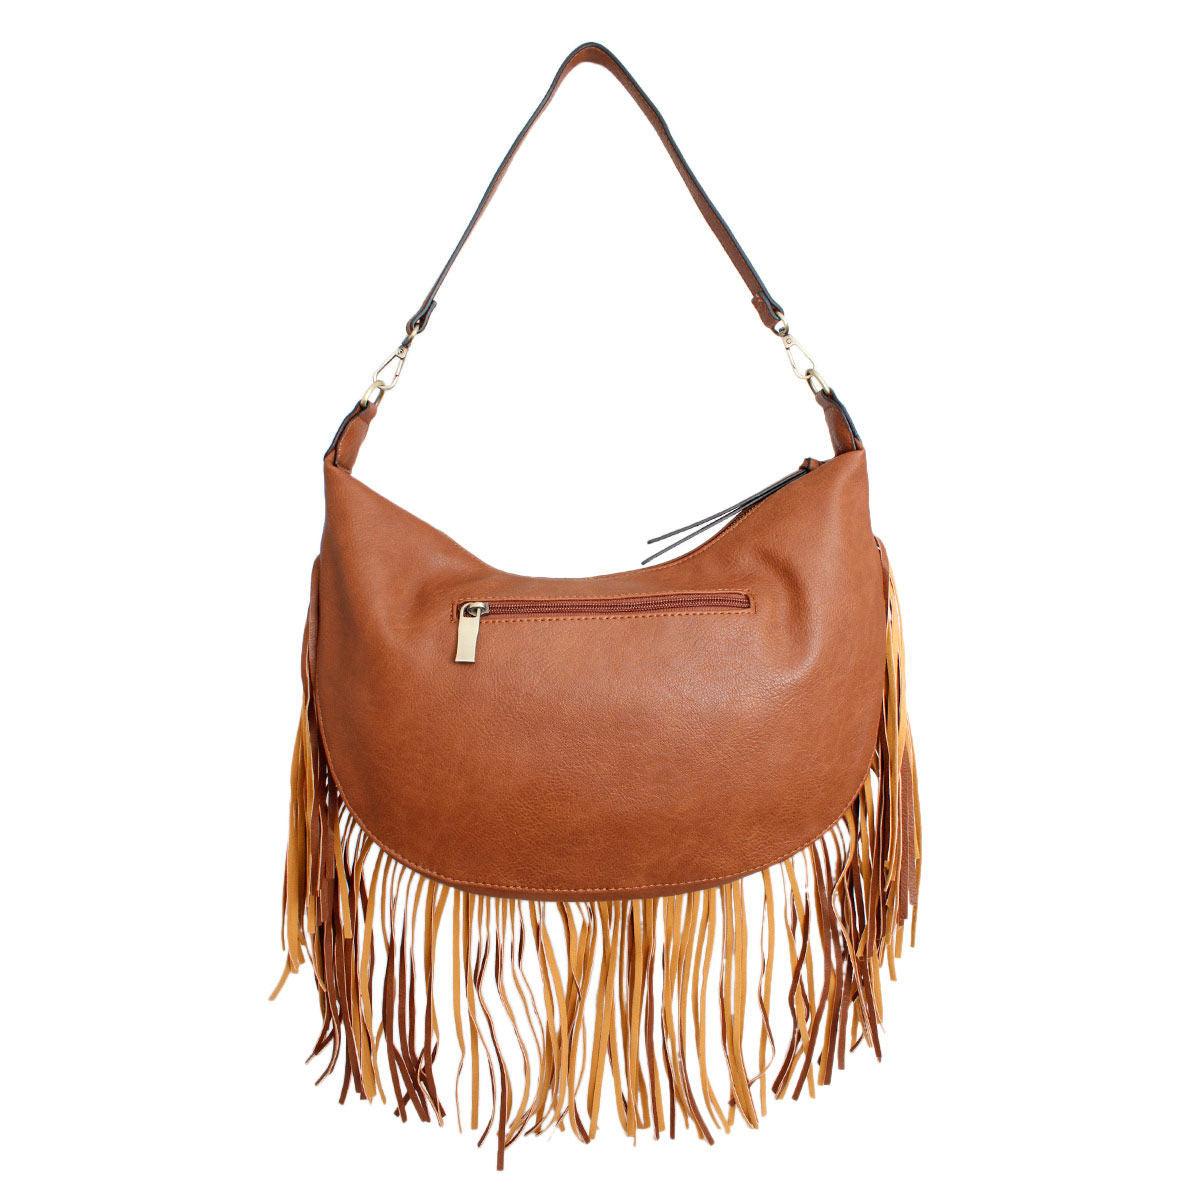 Get the Hottest Brown Boho Handbag with Fringe for Women